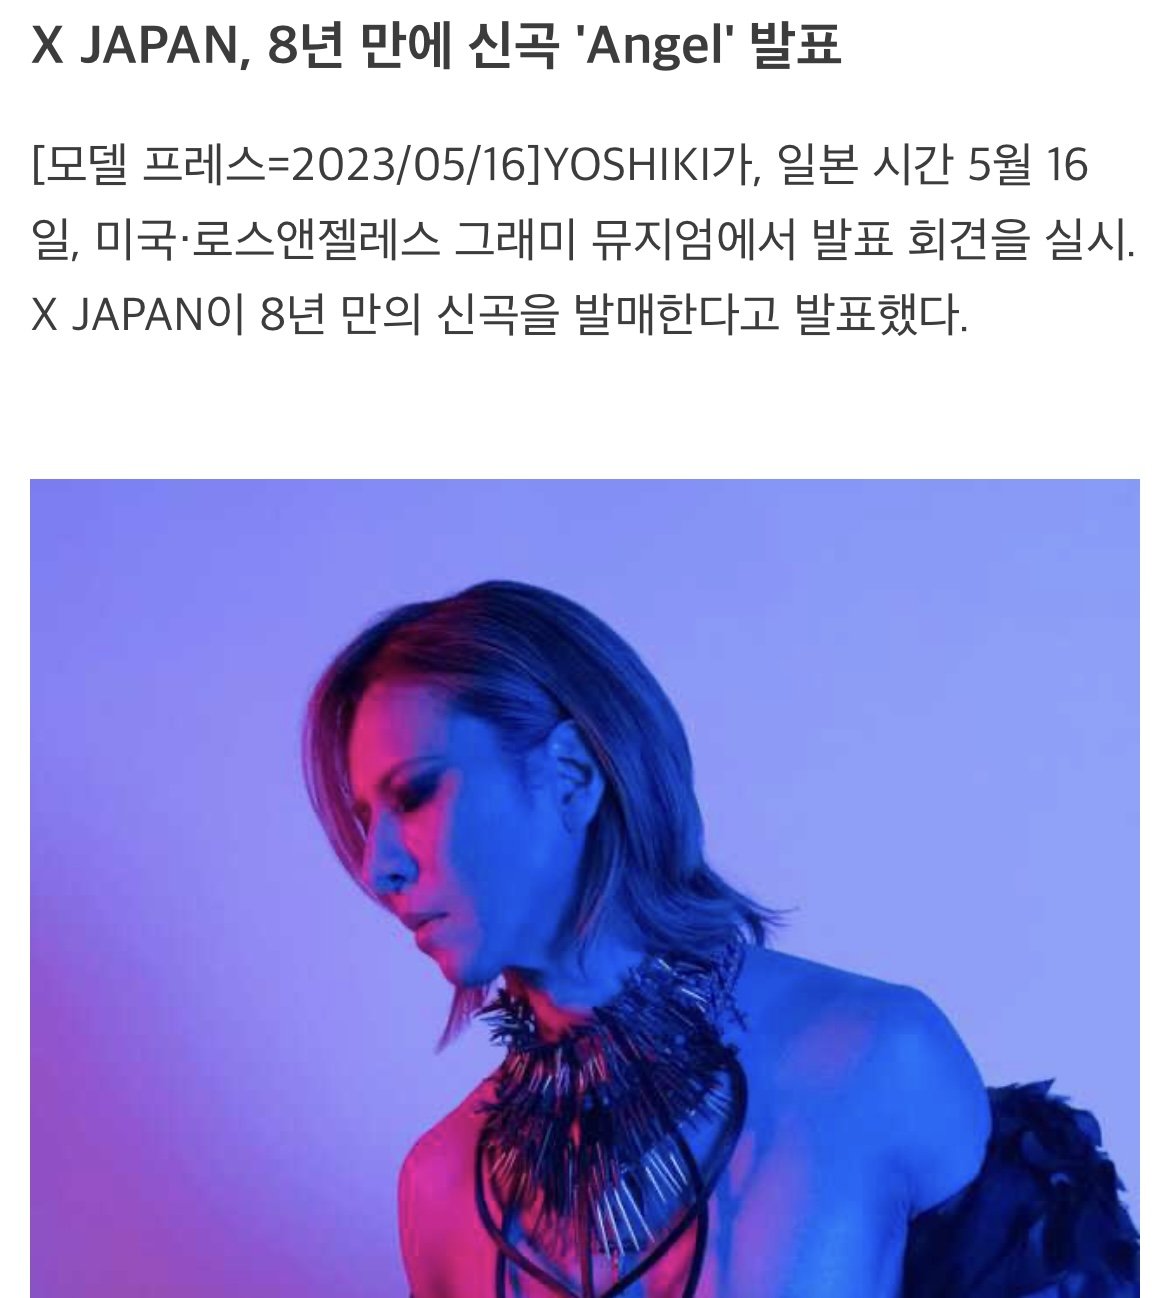 [정보/소식] J-ROCK의 살아있는 레전드 밴드 X-JAPAN 신곡 Angel로 8년만에 컴백 확정 | 인스티즈